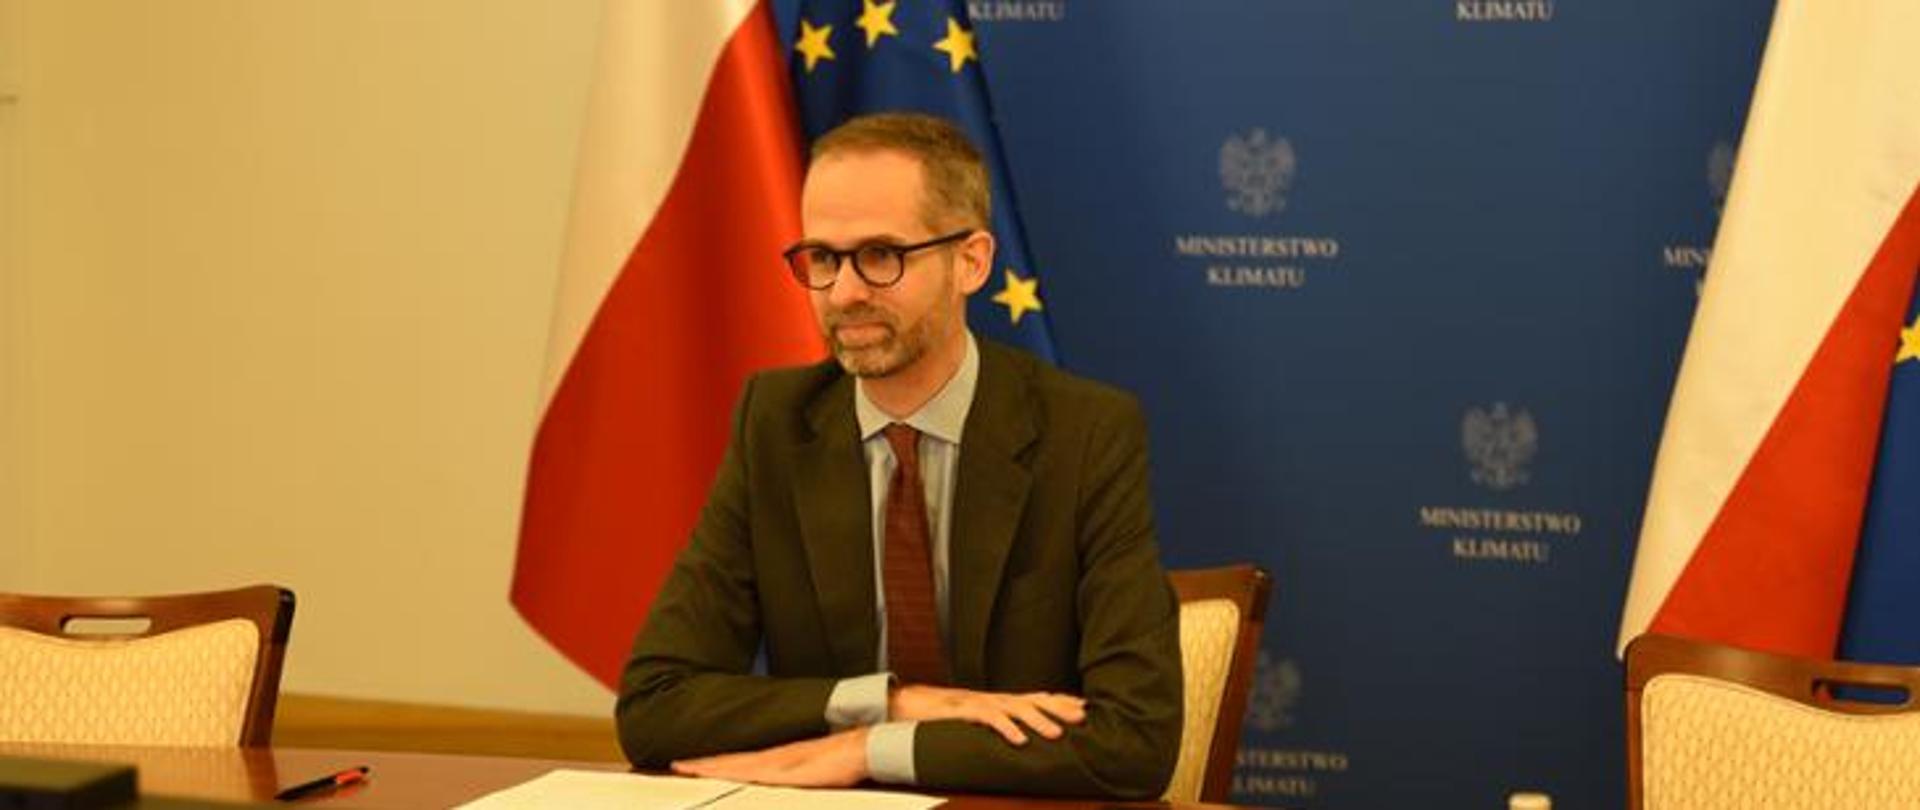 Deputy Minister Guibourgé-Czetwertyński